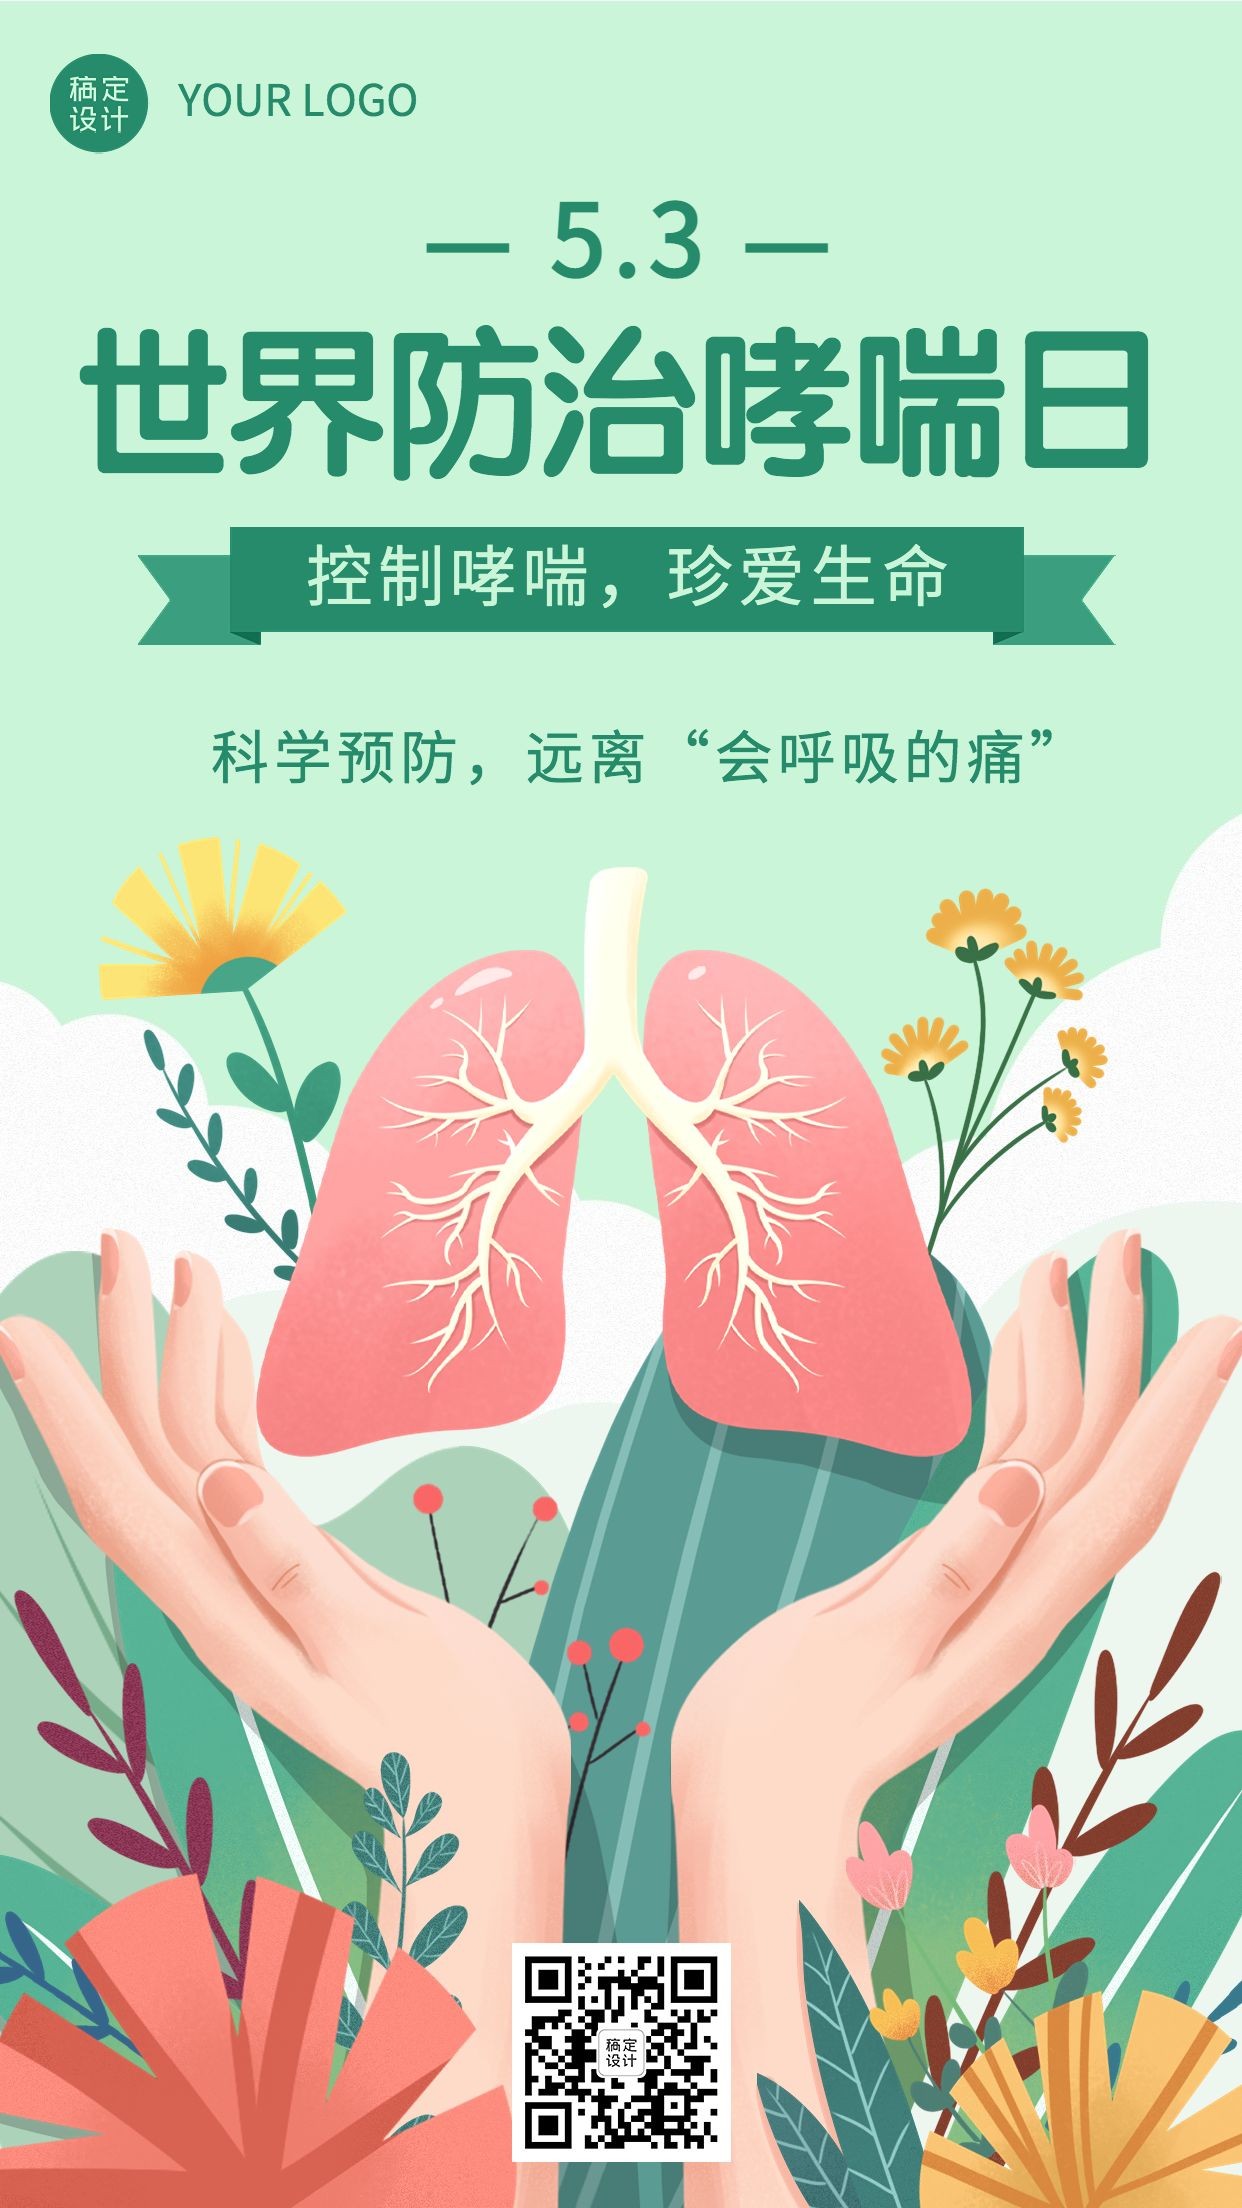 世界哮喘日节日宣传手机海报预览效果